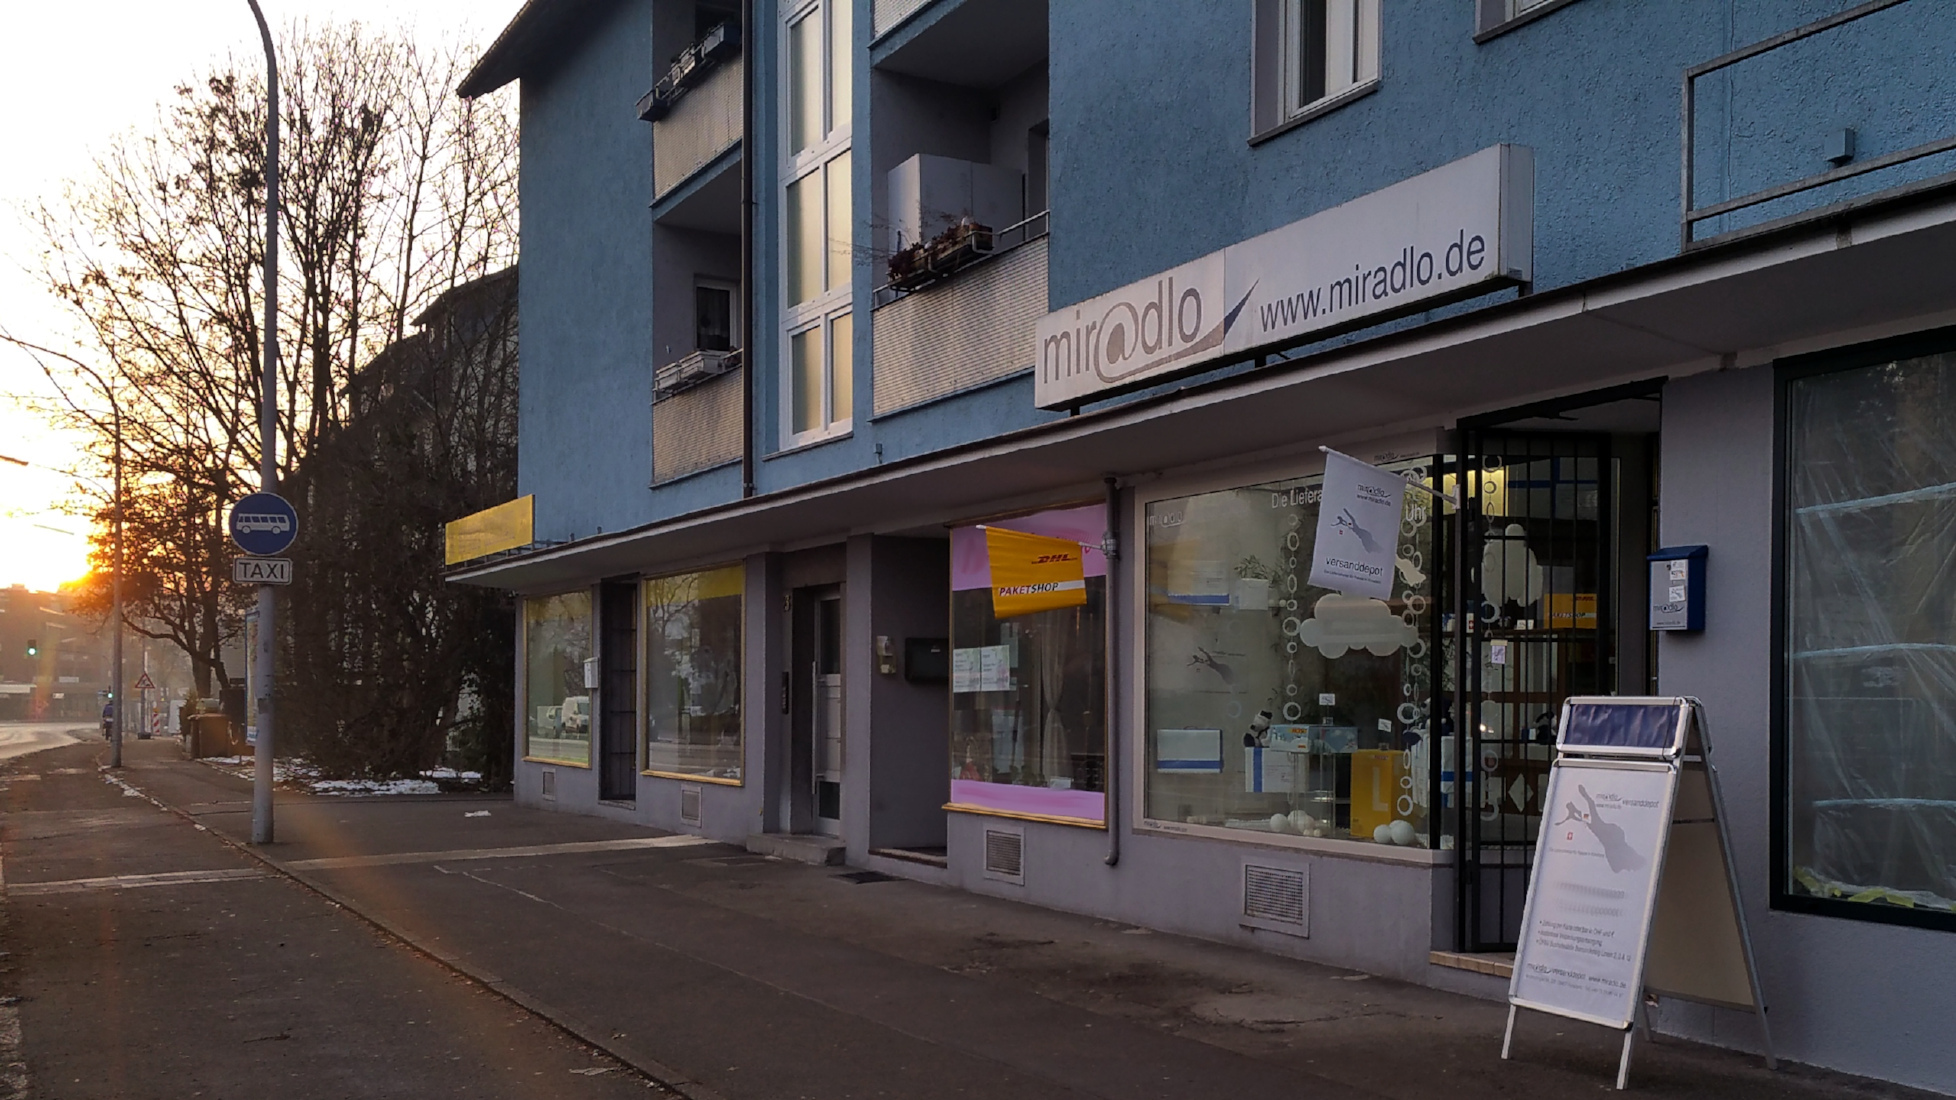 Je nach Jahreszeit öffnen wir bei Sonnenaufgang, miradlo Versanddepot, die Lieferadresse in Konstanz